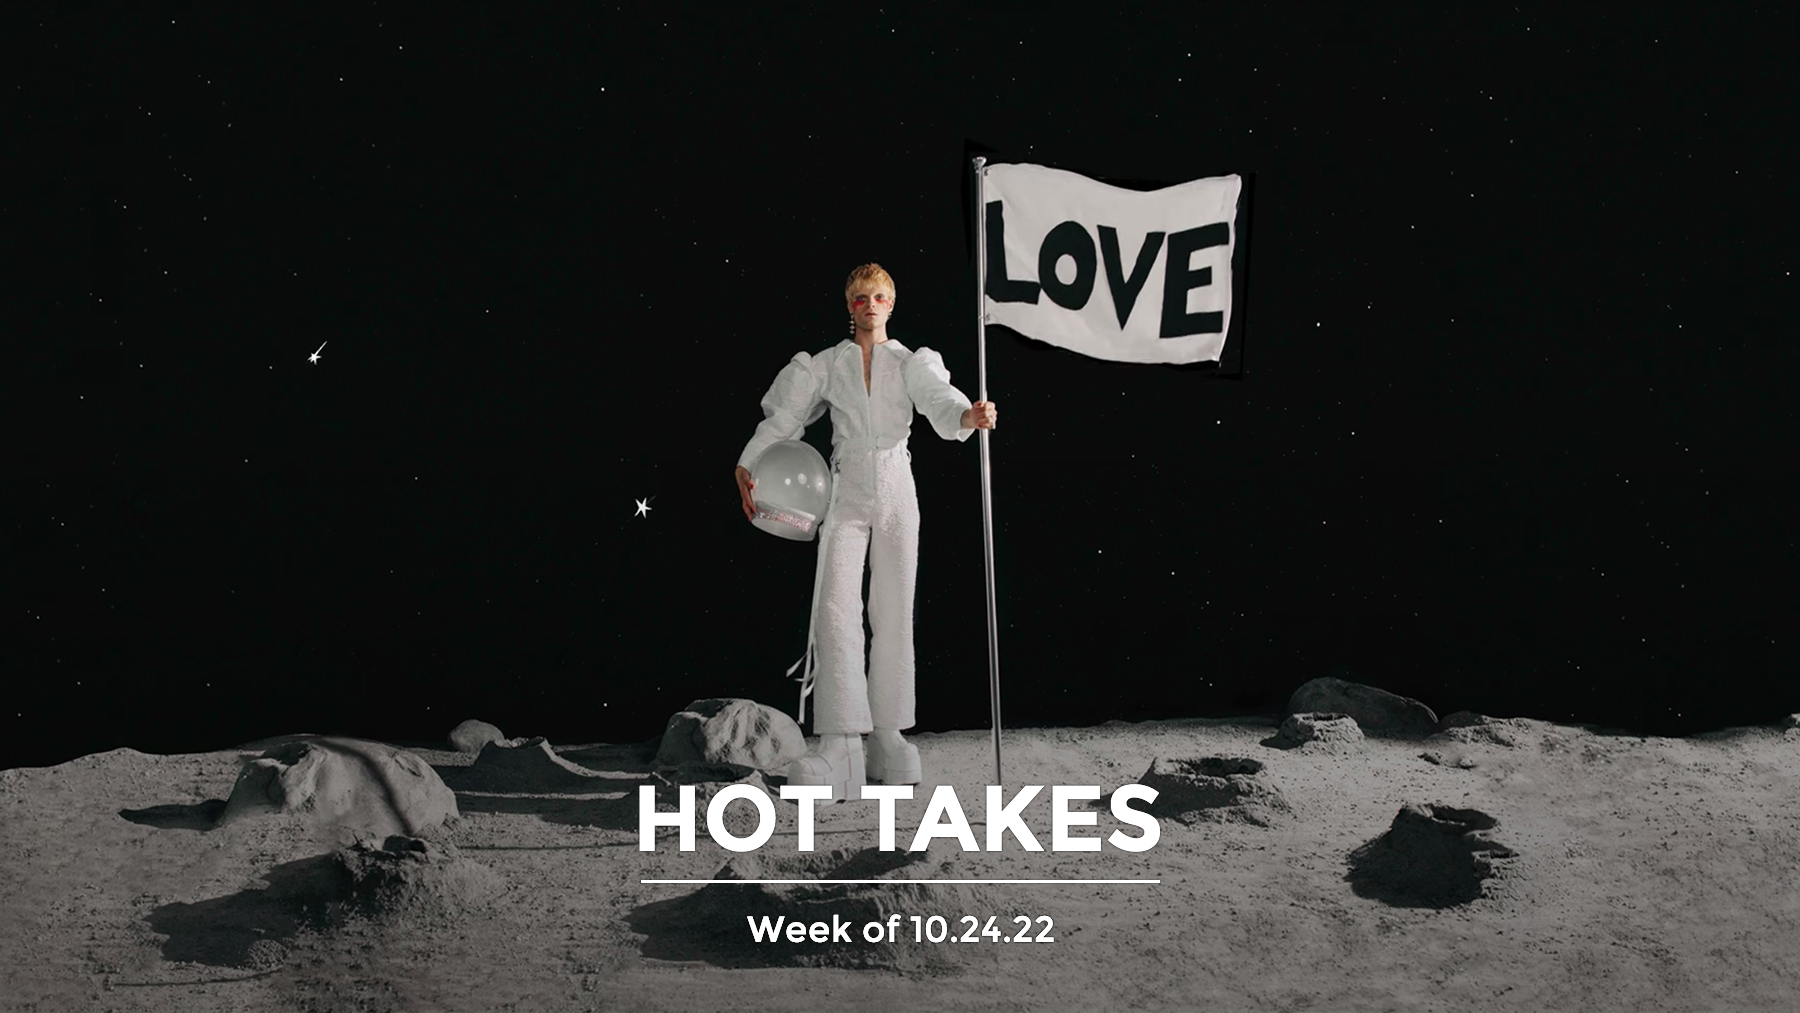 #HotTakes | Week of 10.24.22